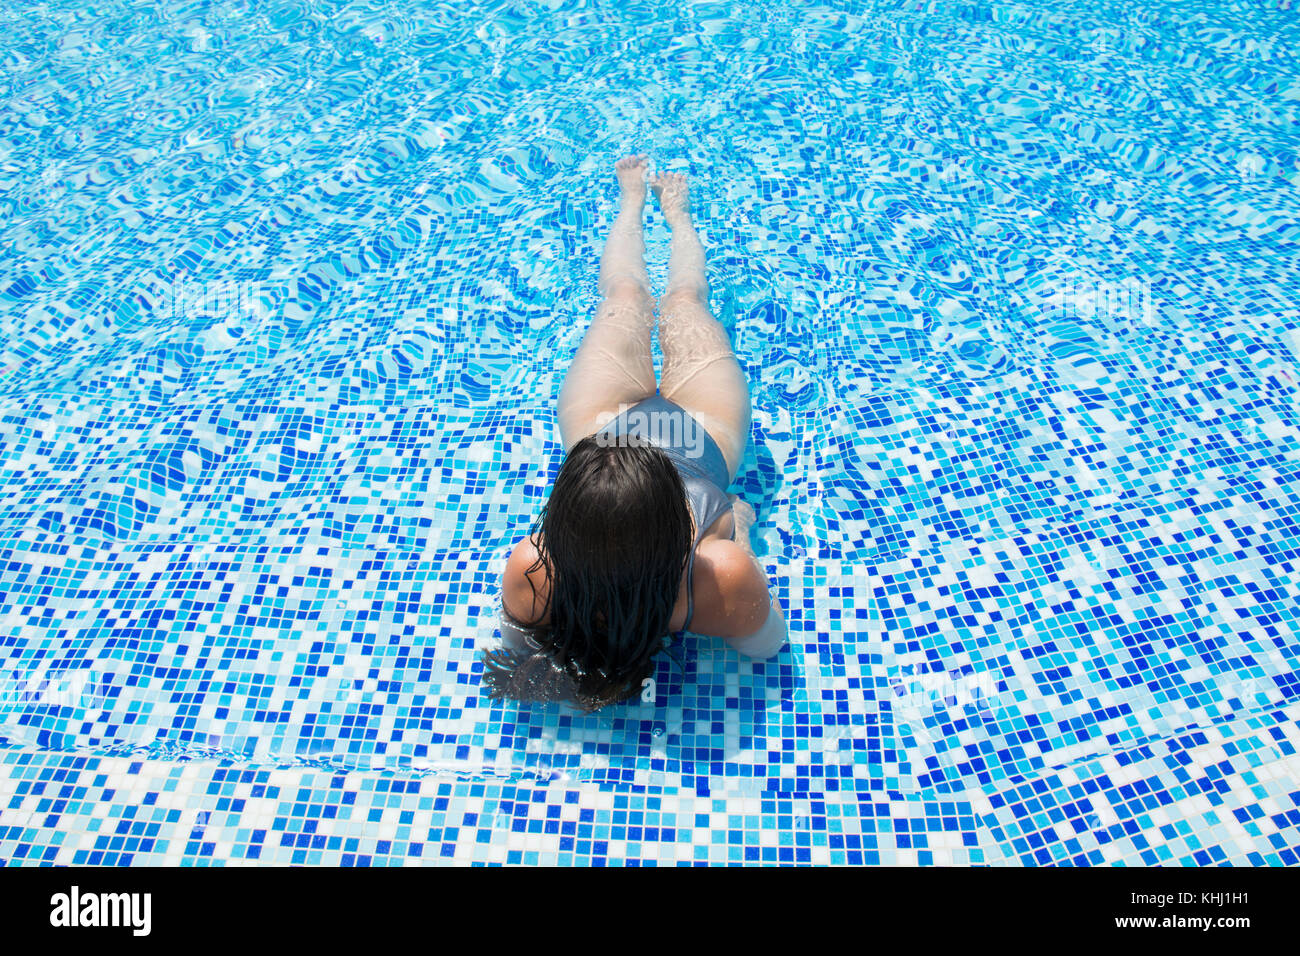 Rear view of a woman in bikini sat in the pool Stock Photo